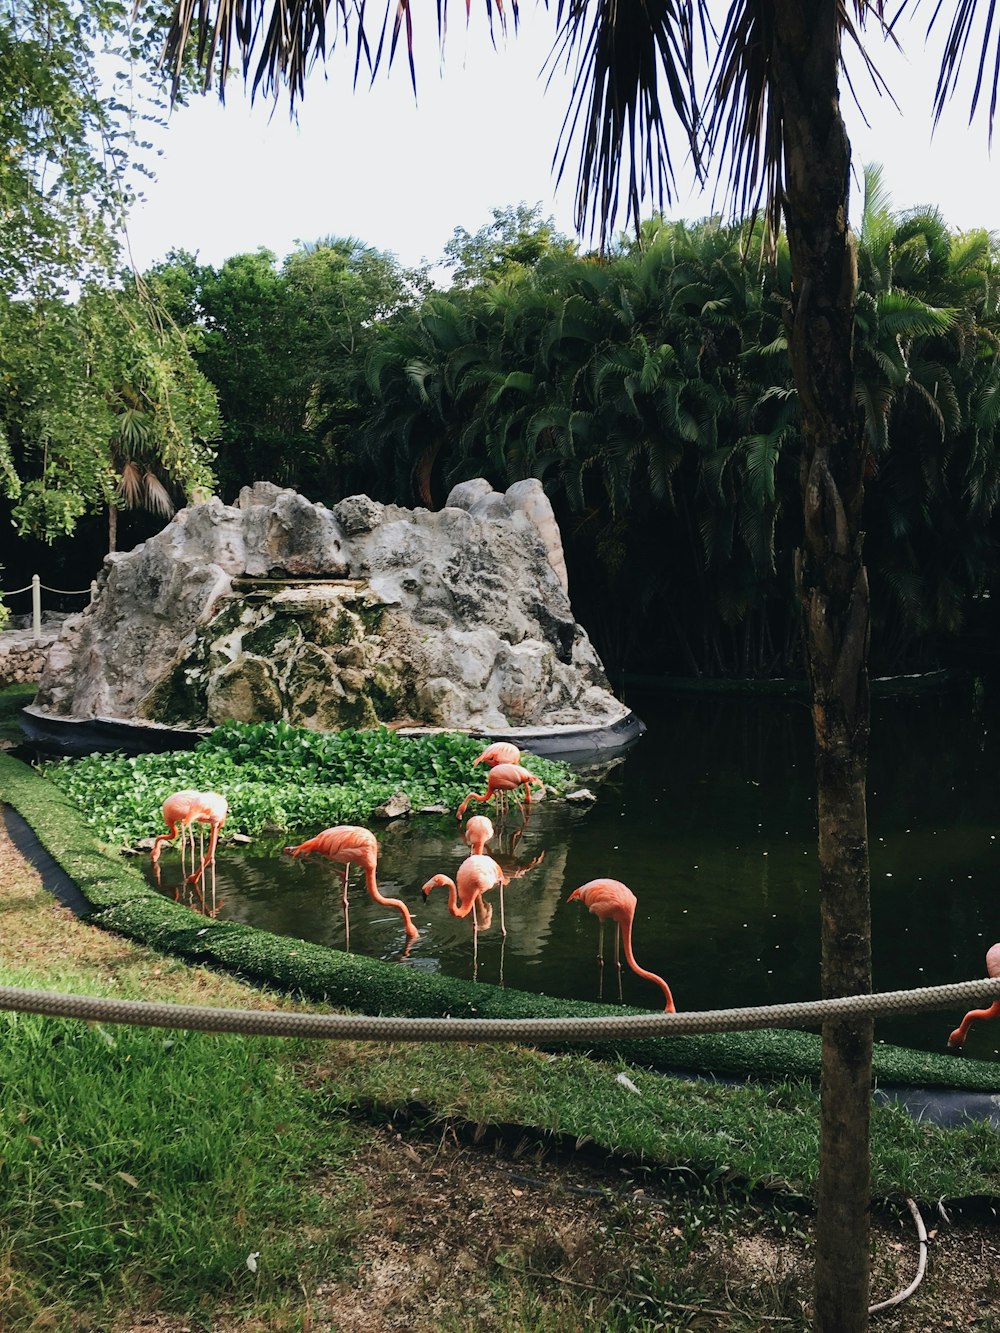 orange and white flamingos on water